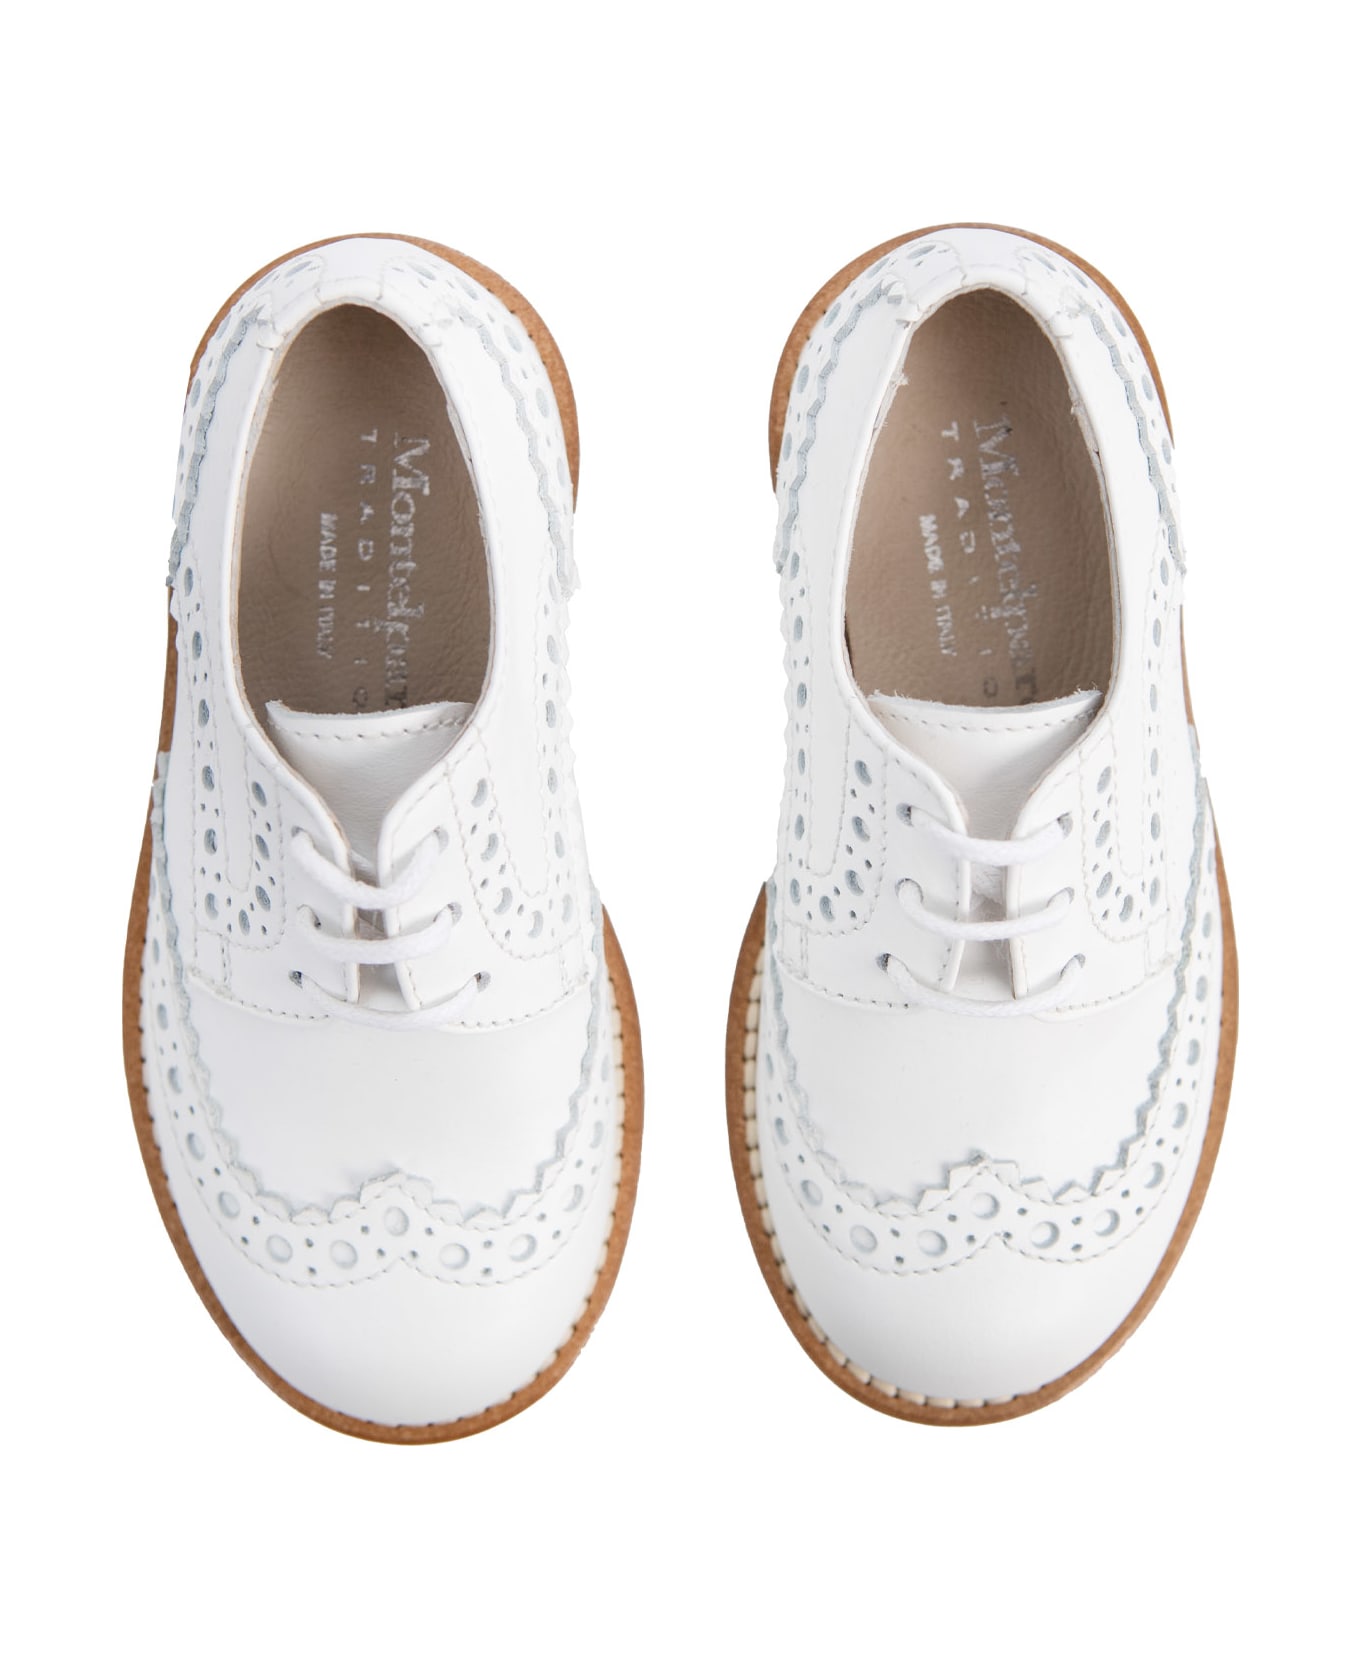 Andrea Montelpare Leather Shoe - White